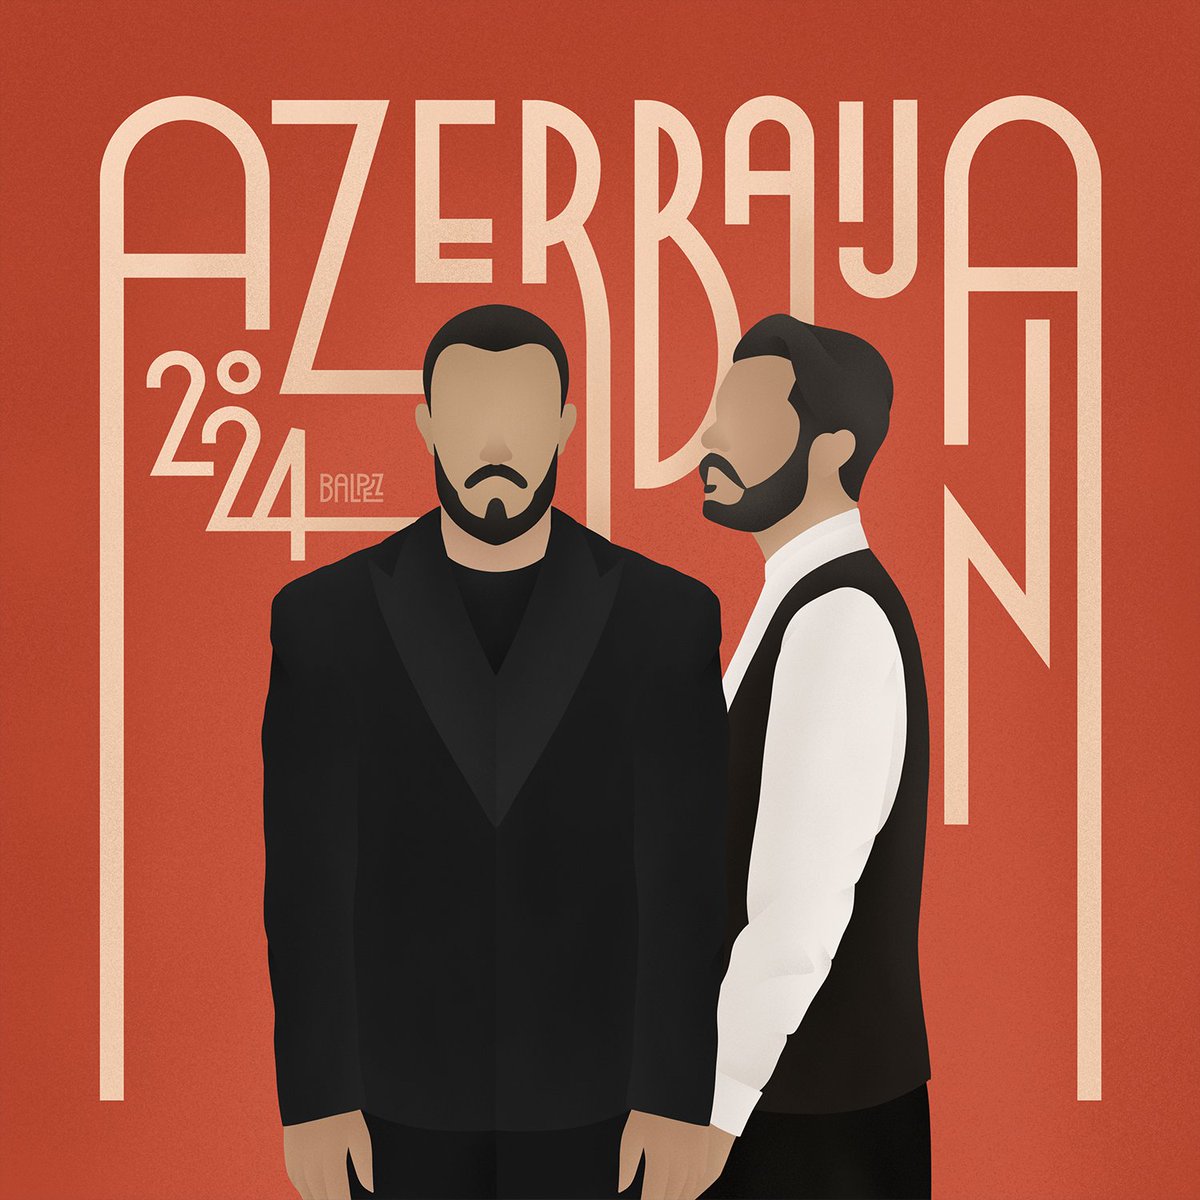 “Gəl özünlə apar,
Sənsiz göy mənə dar”

🇦🇿 Azerbaijan | #Fahree feat. #IlkinDovlatov
#ÖzünləApar